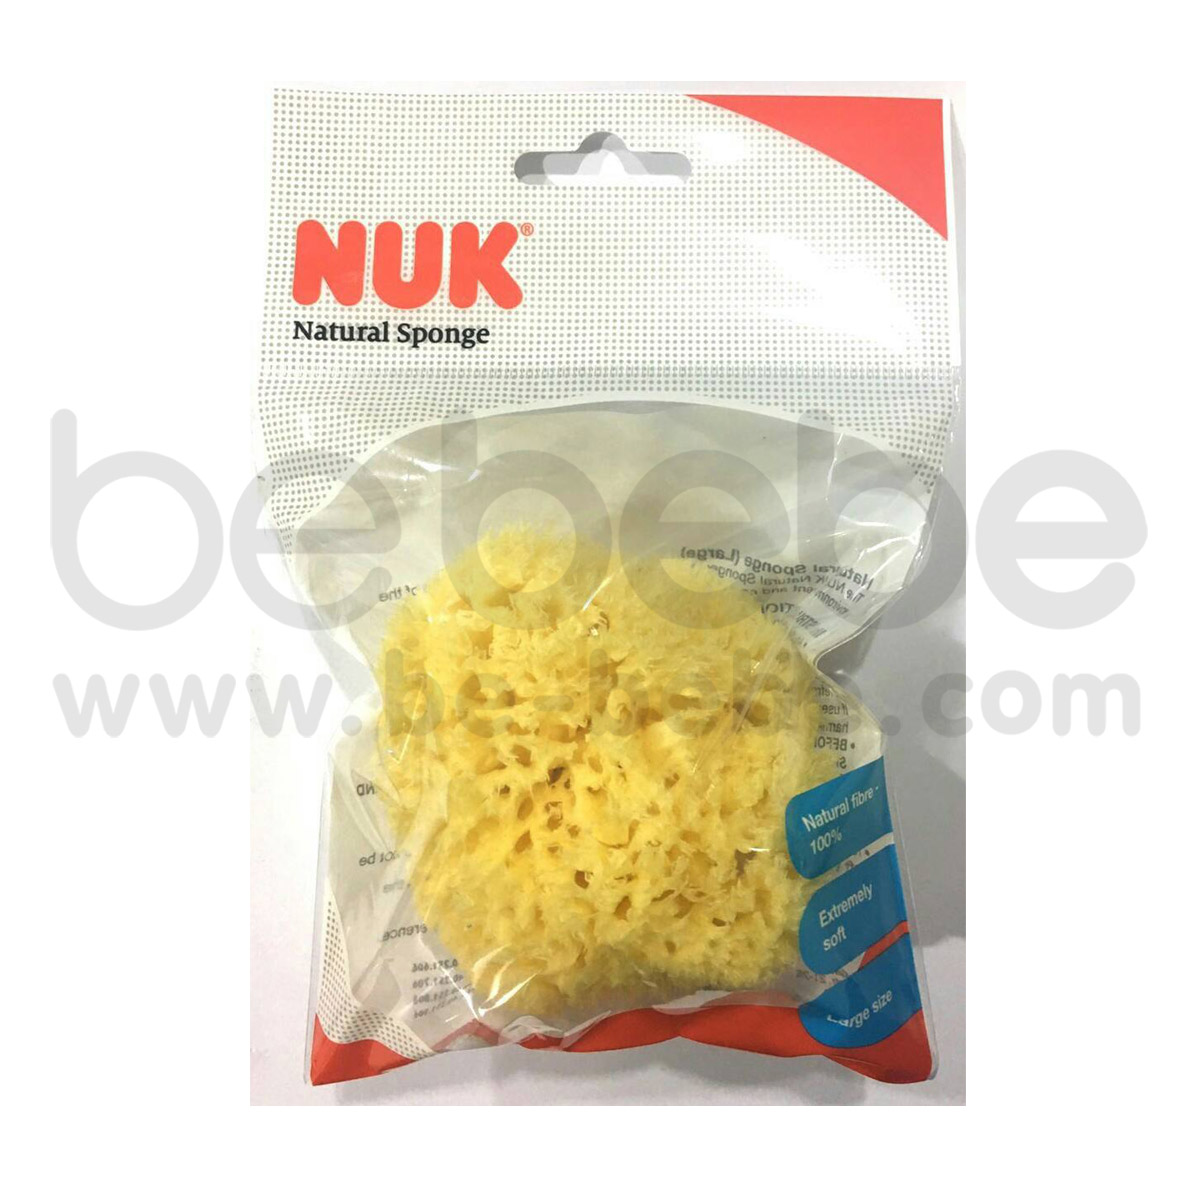 NUK : Natural Sponge